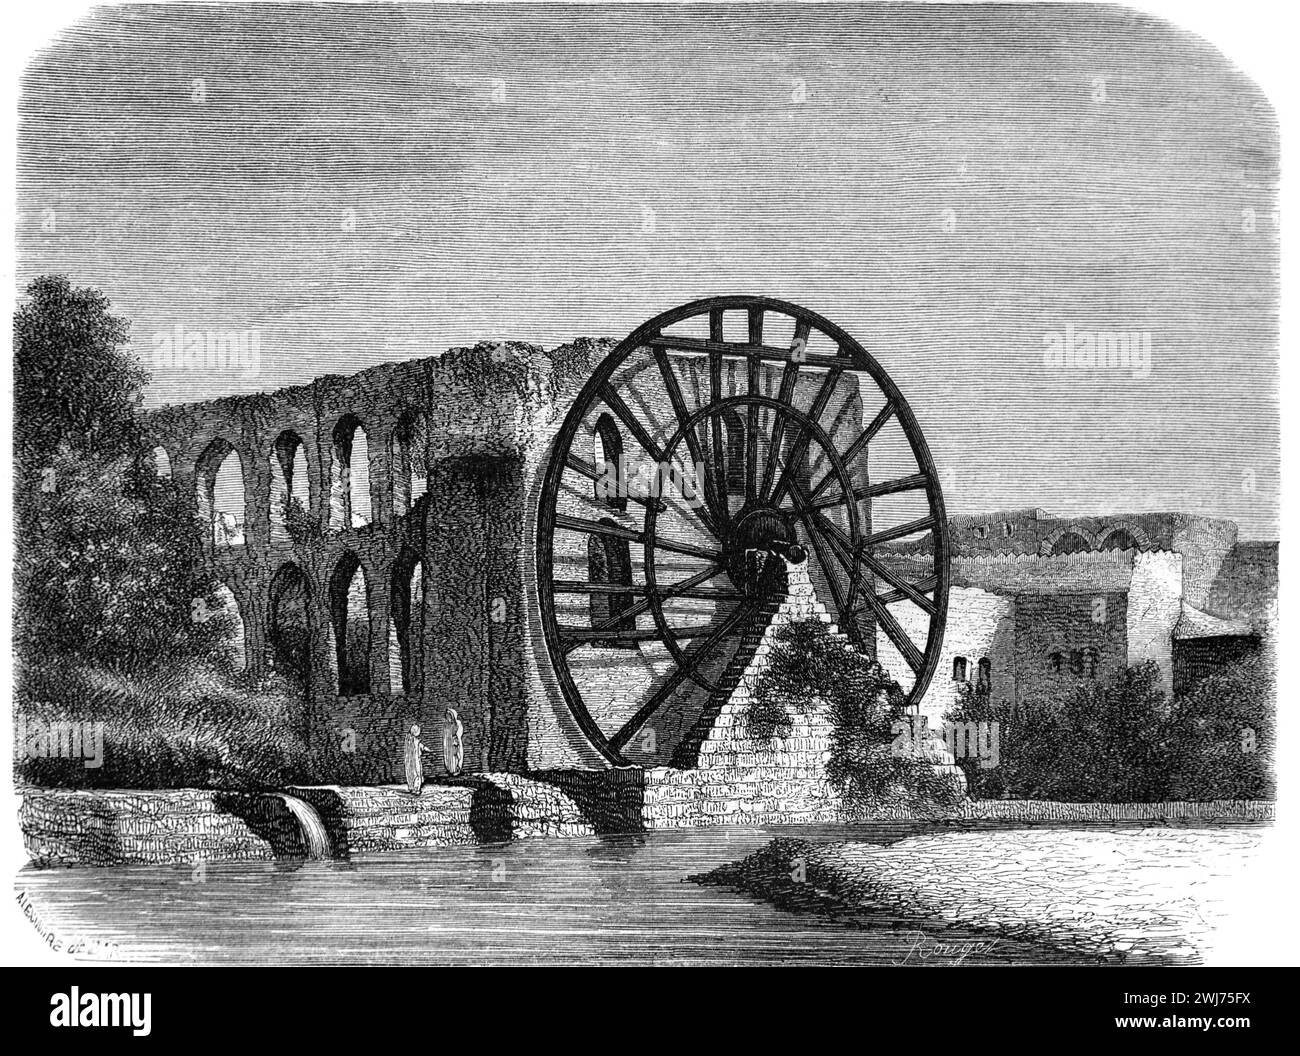 Noria géante historique, roue à eau ou roue à eau utilisée pour l'irrigation sur la rivière Orontes Hama Syrie. Illustration vintage ou historique ou gravure 1863 Banque D'Images